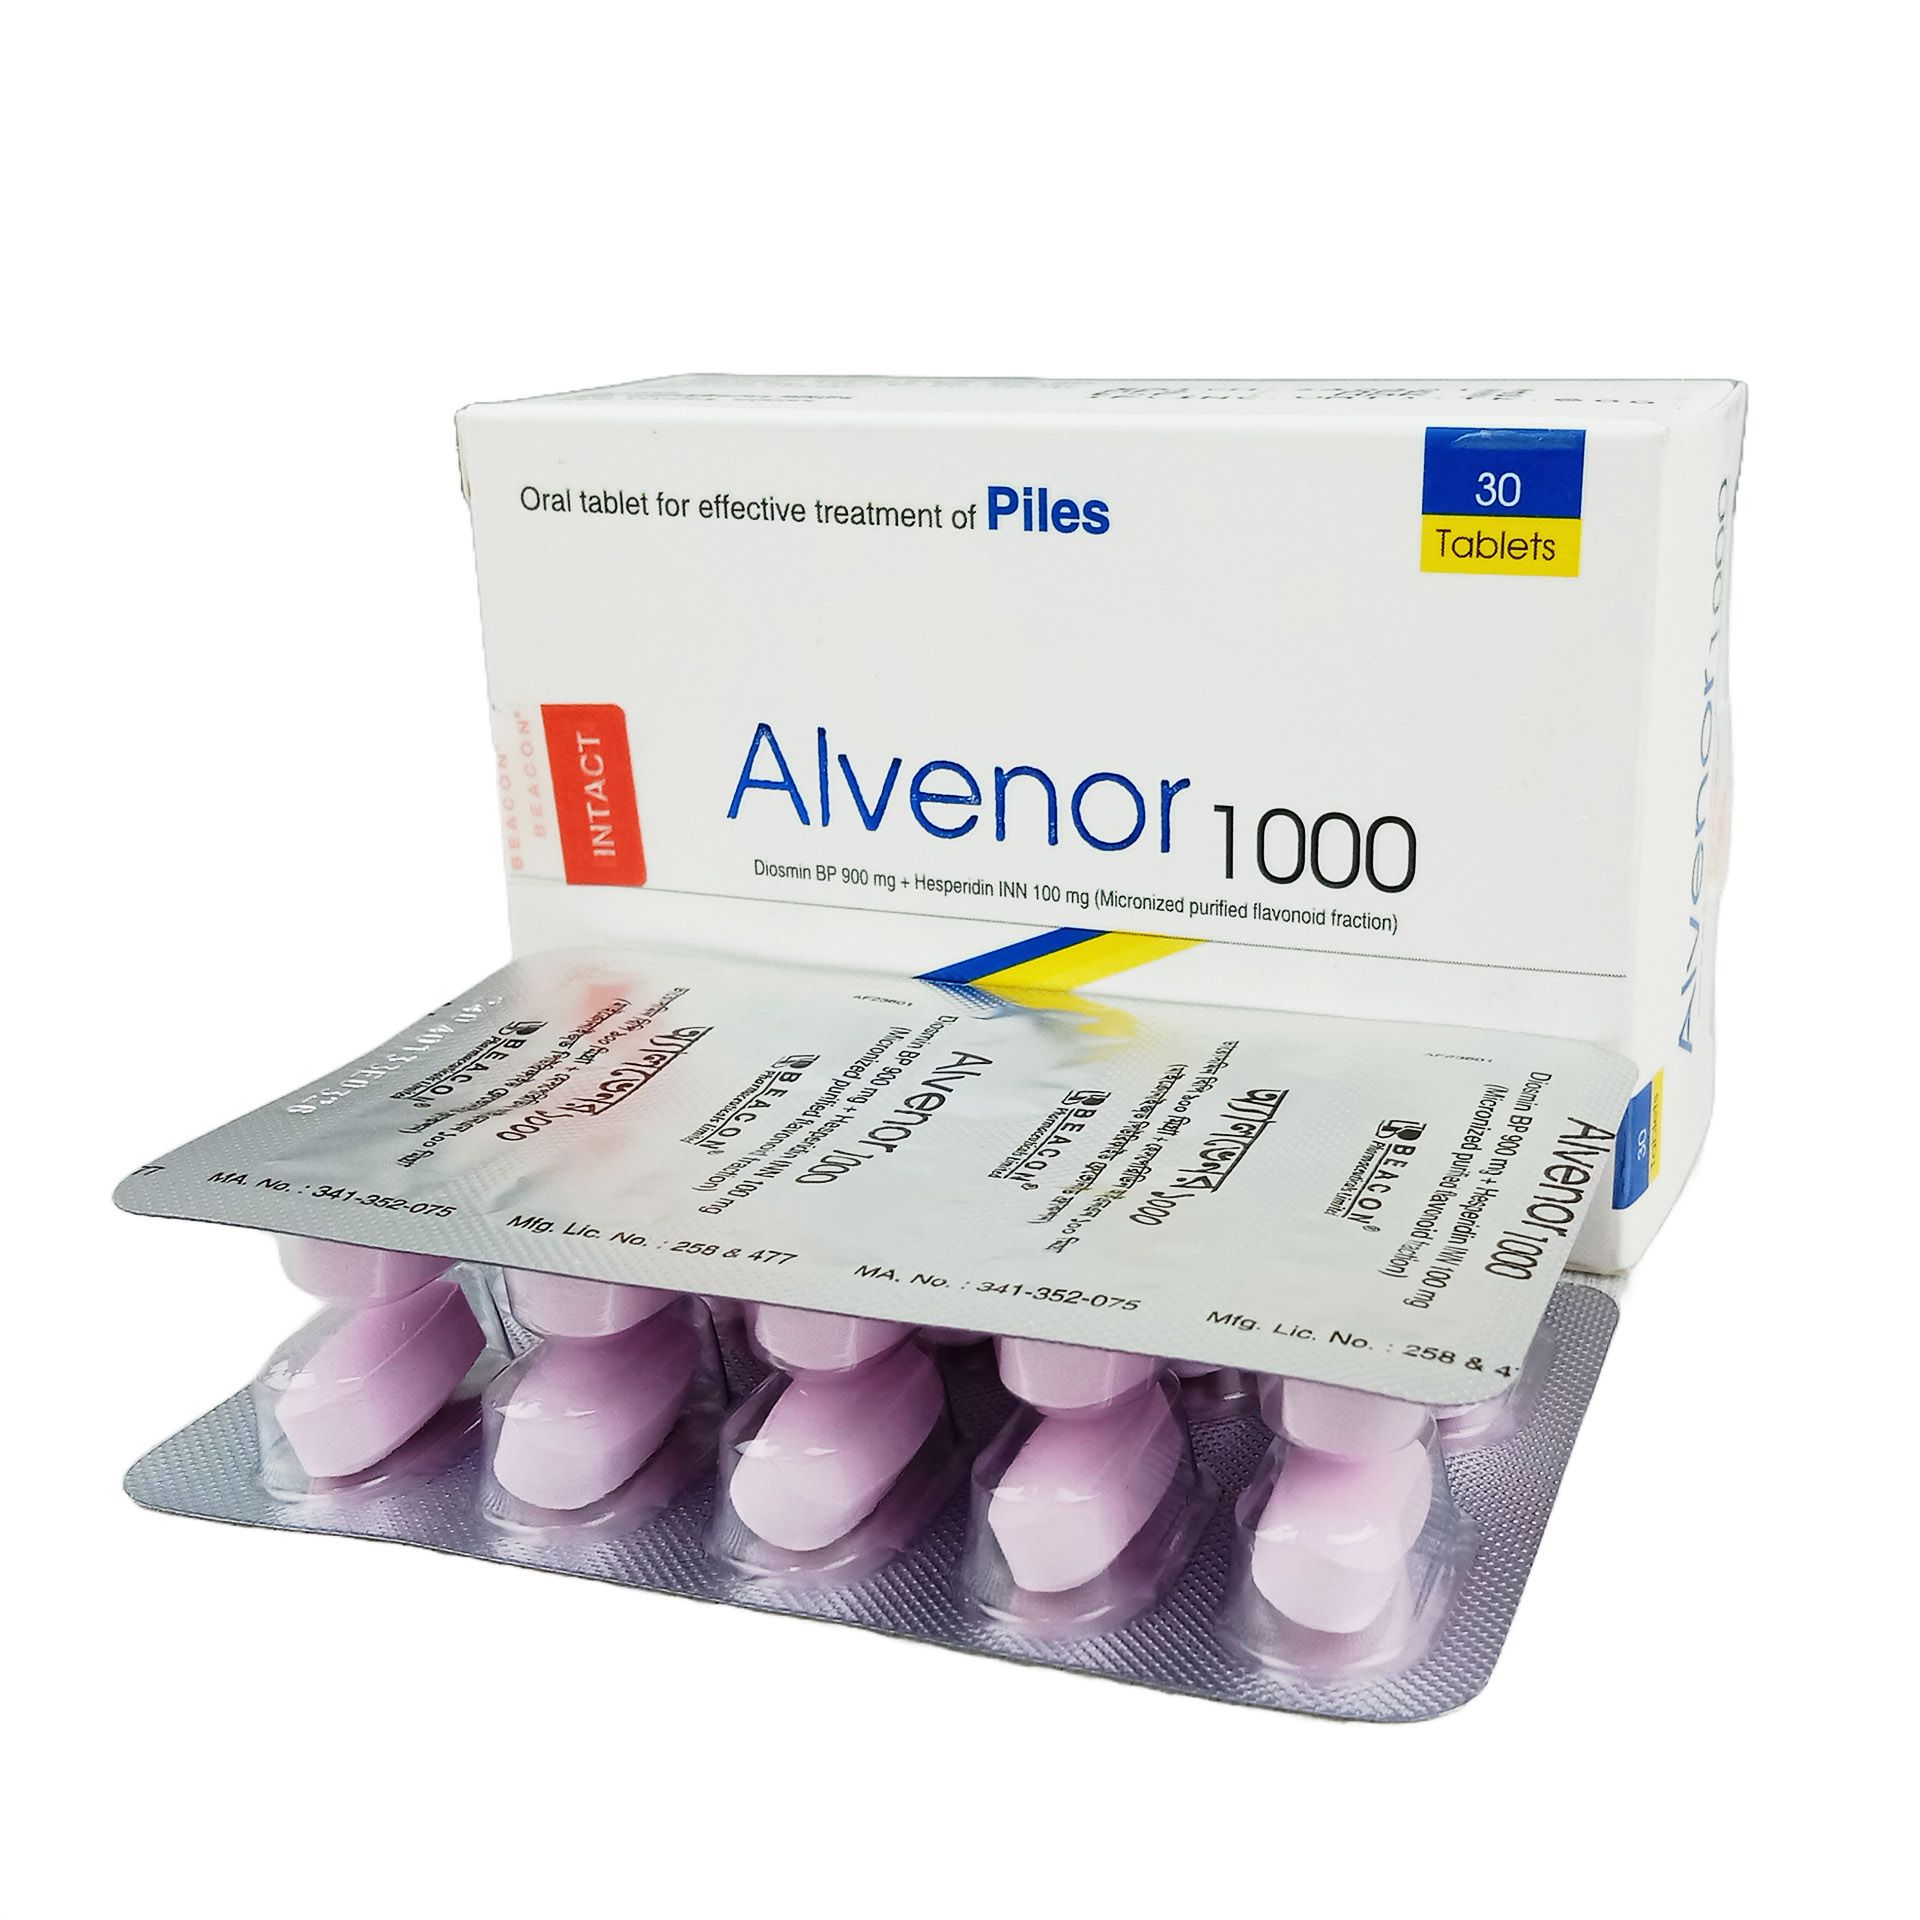 Alvenor 1000 900mg+100mg Tablet